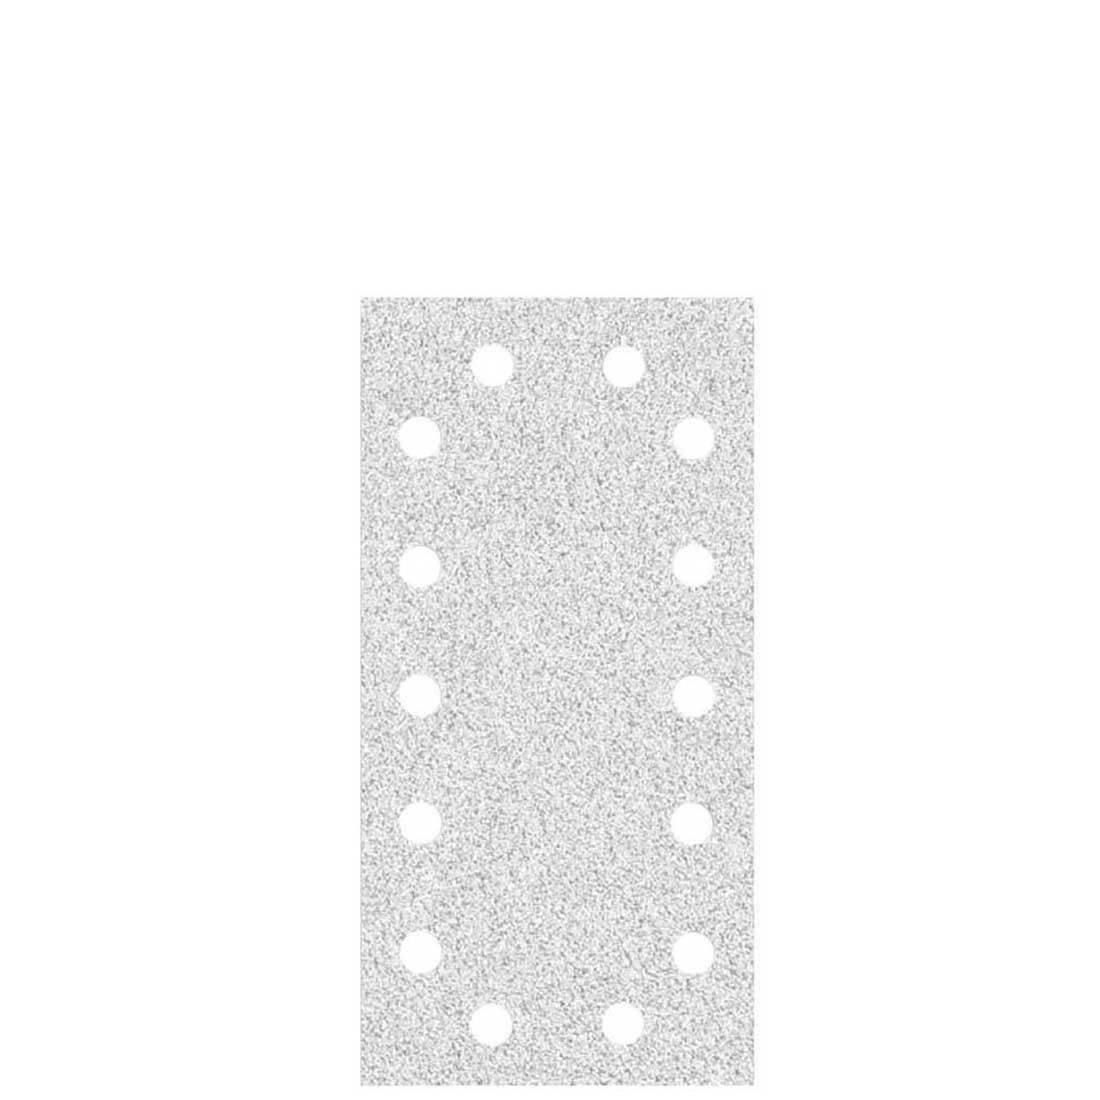 MioTools Klett-Schleifblätter für Schwingschleifer, K40–400, 230 x 115 mm / 14-Loch / Korund mit Stearat